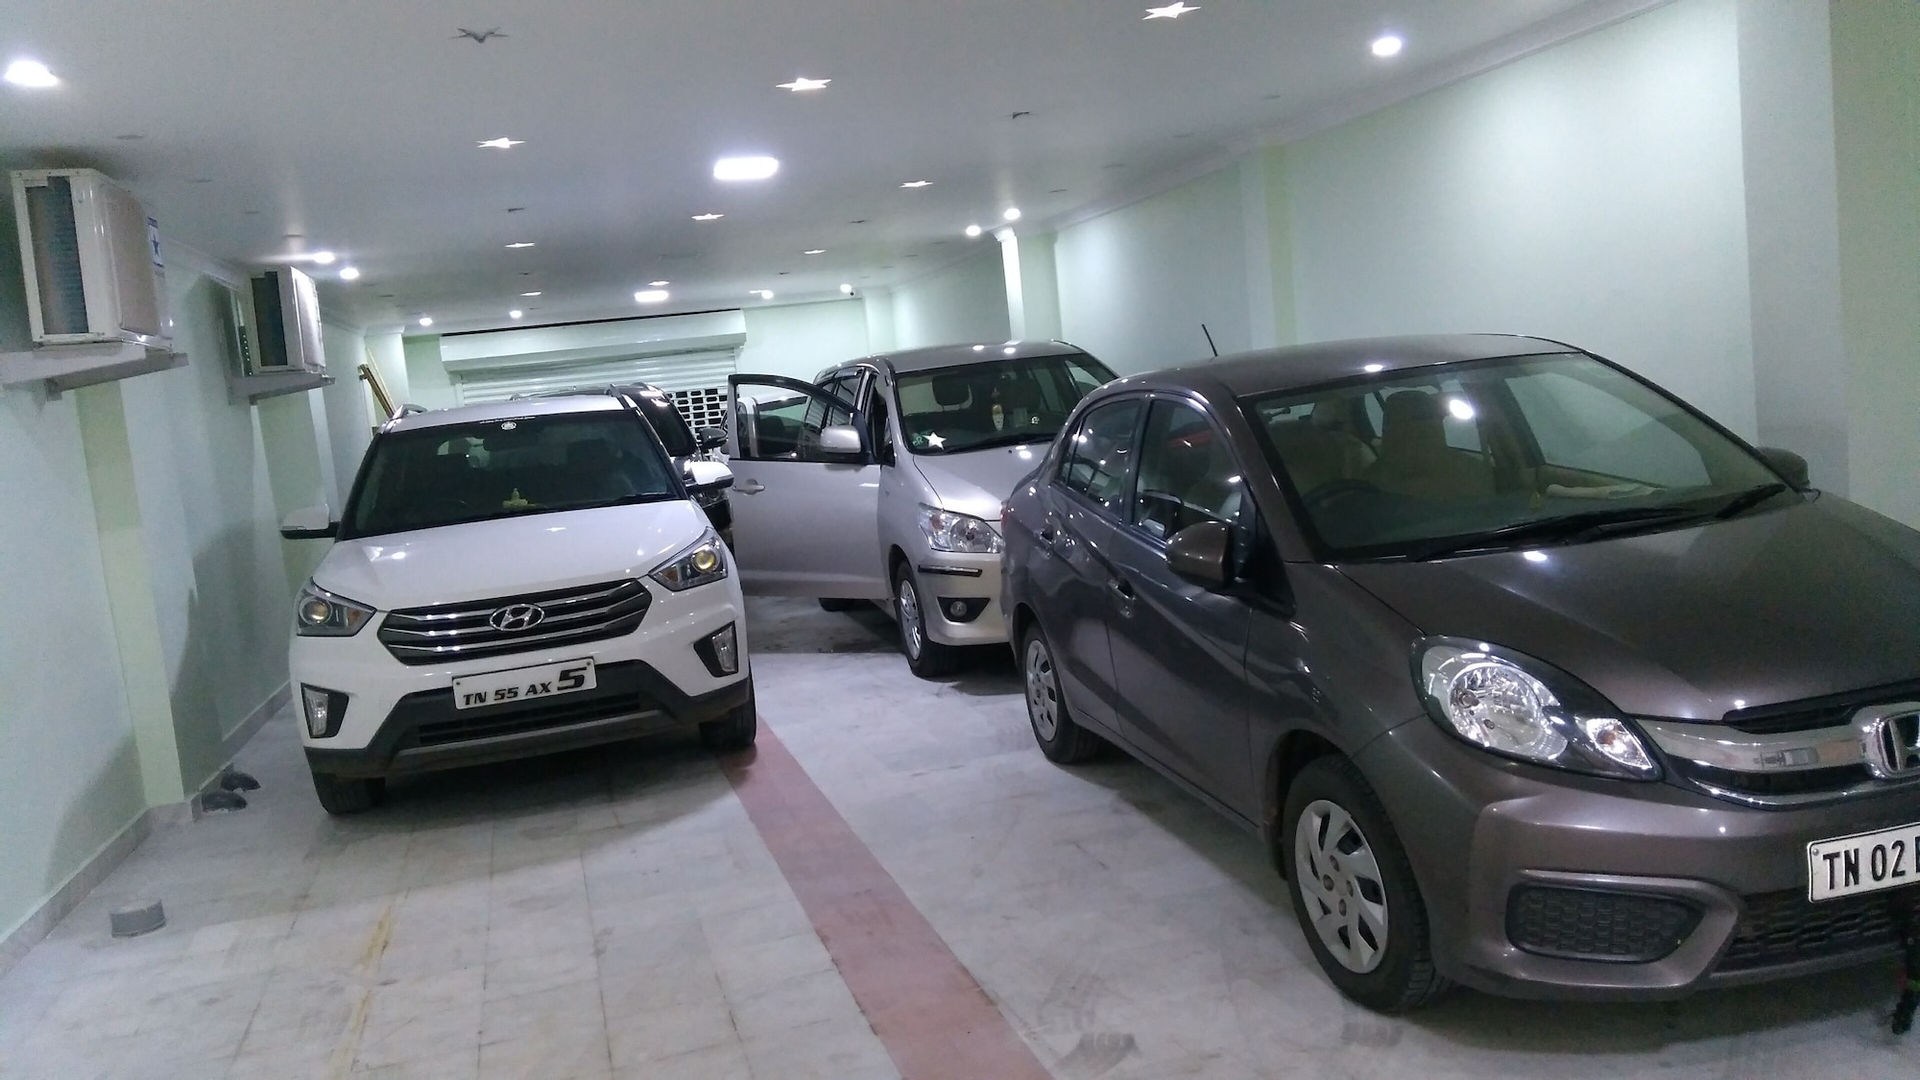 Parking, Skantha Regency, Thoothukkudi